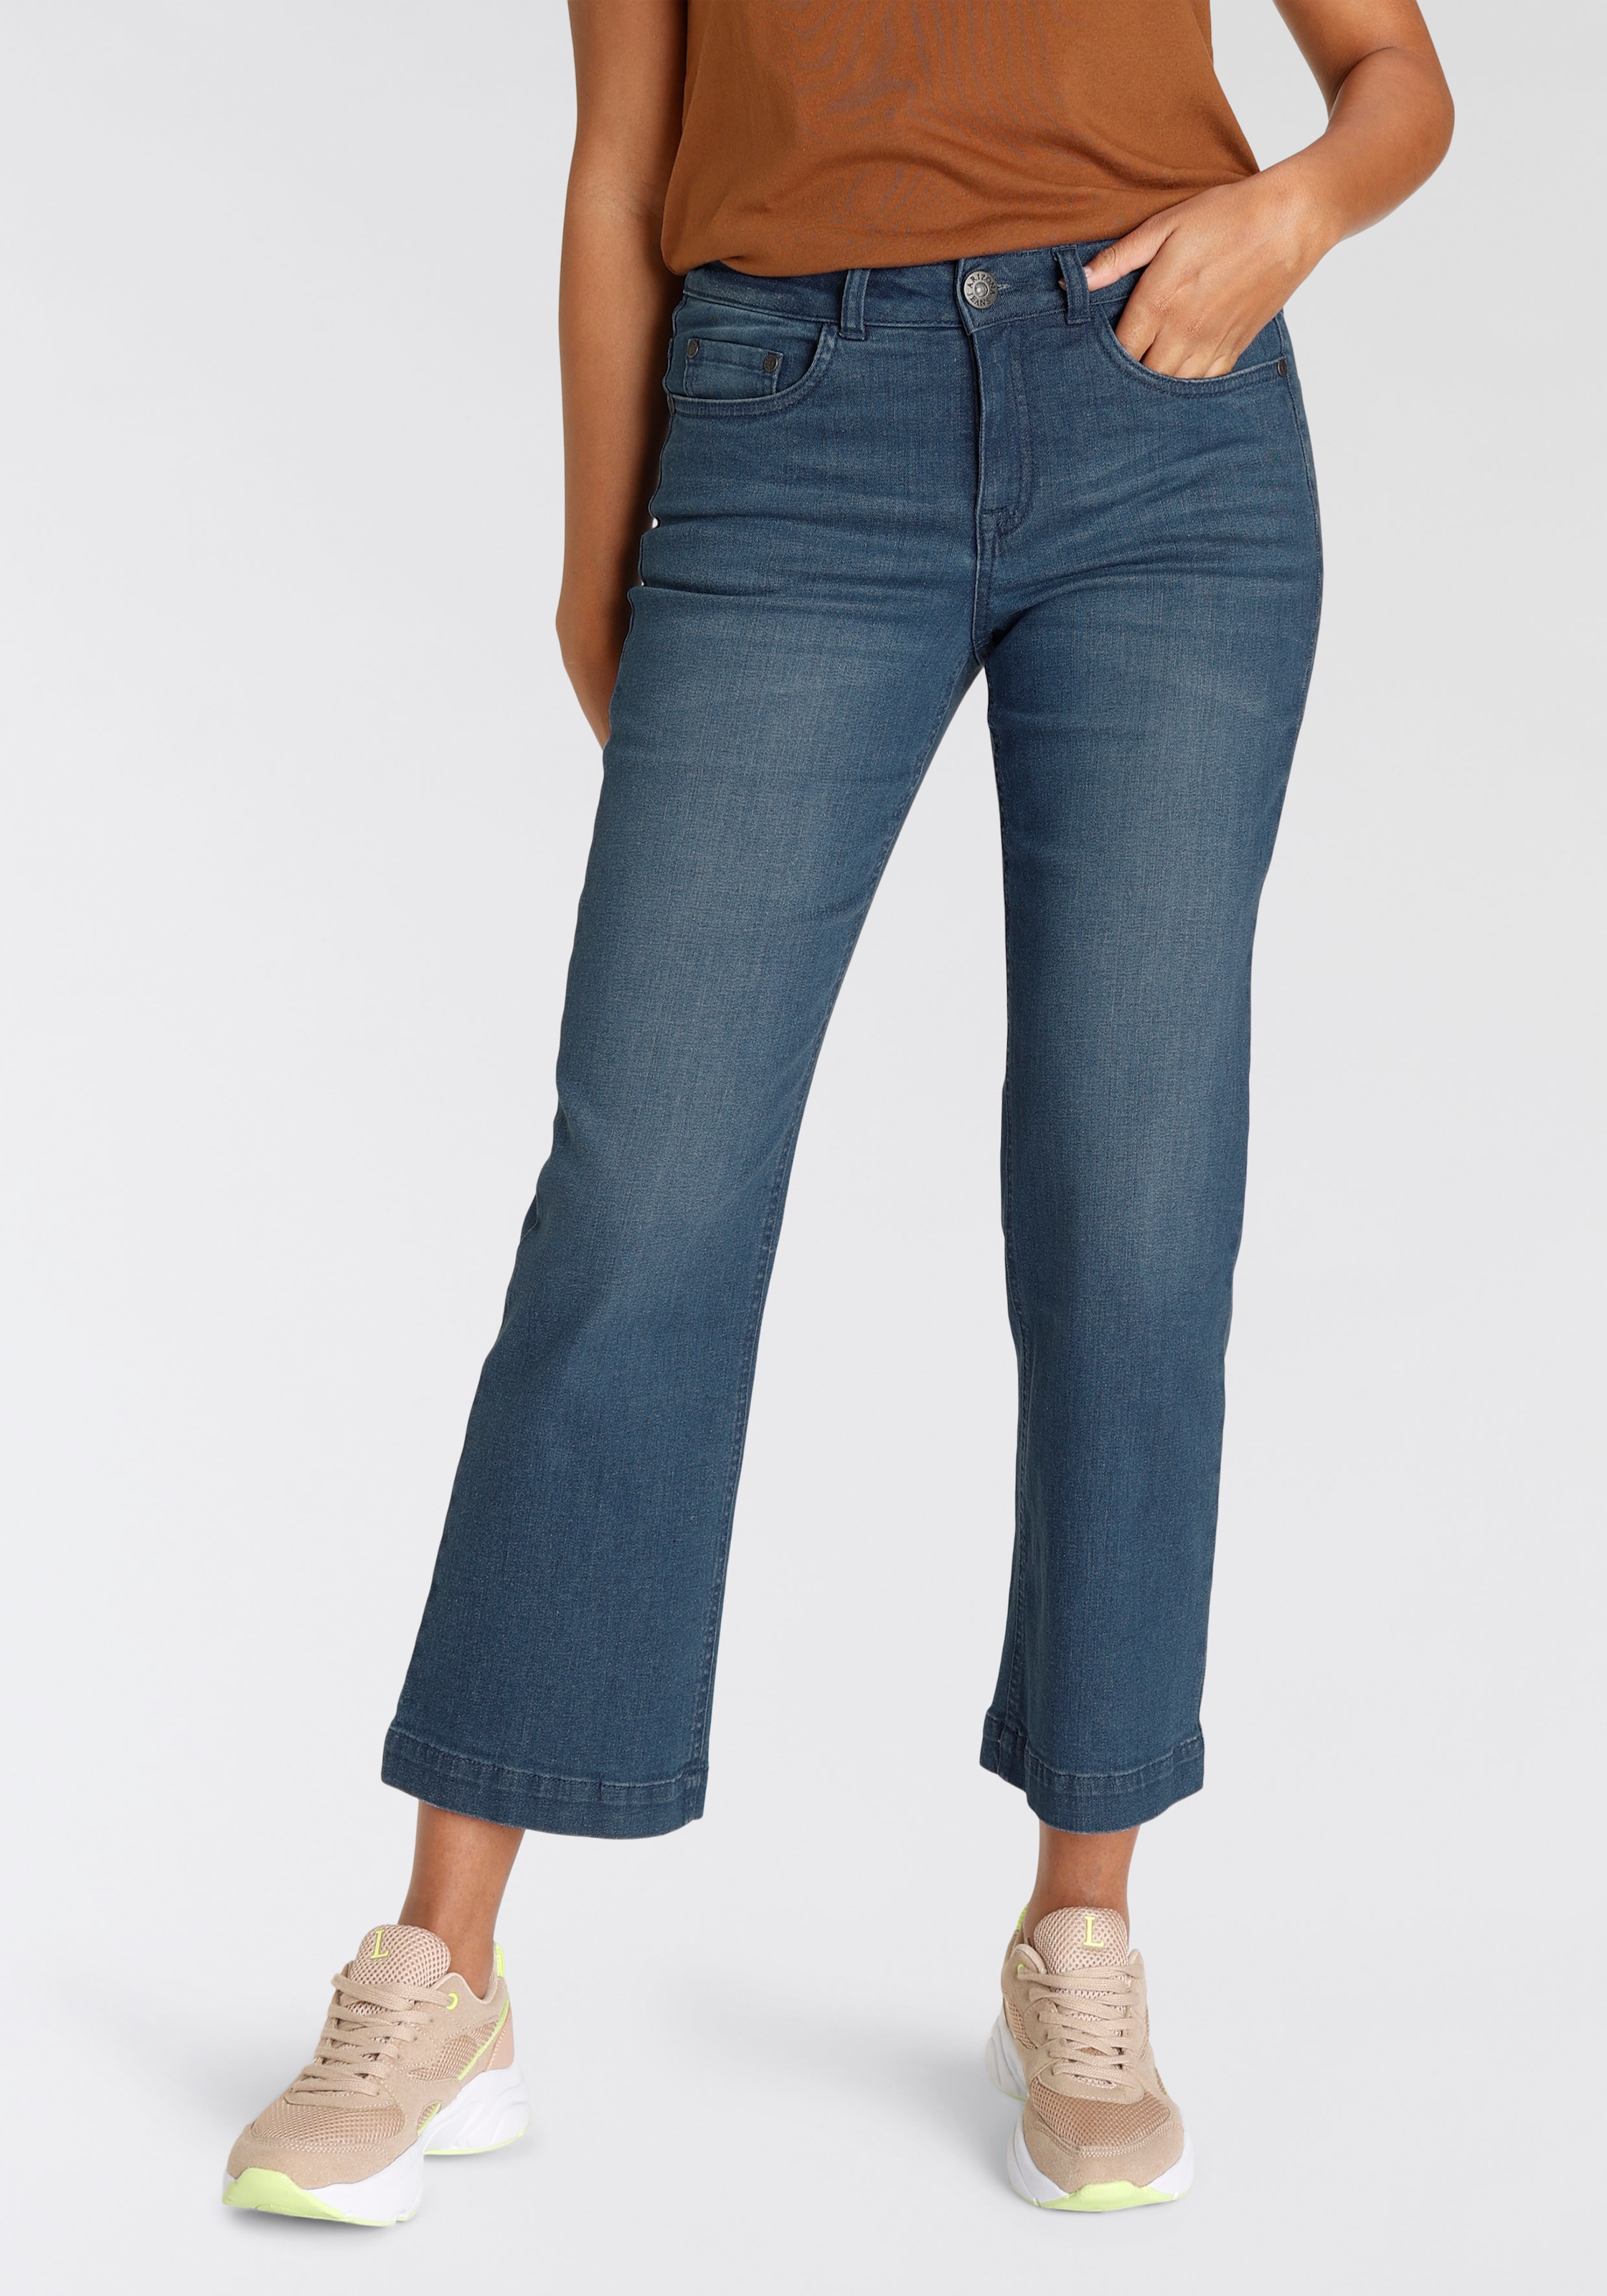 Arizona online kaufen Jeans, Waist Weite High